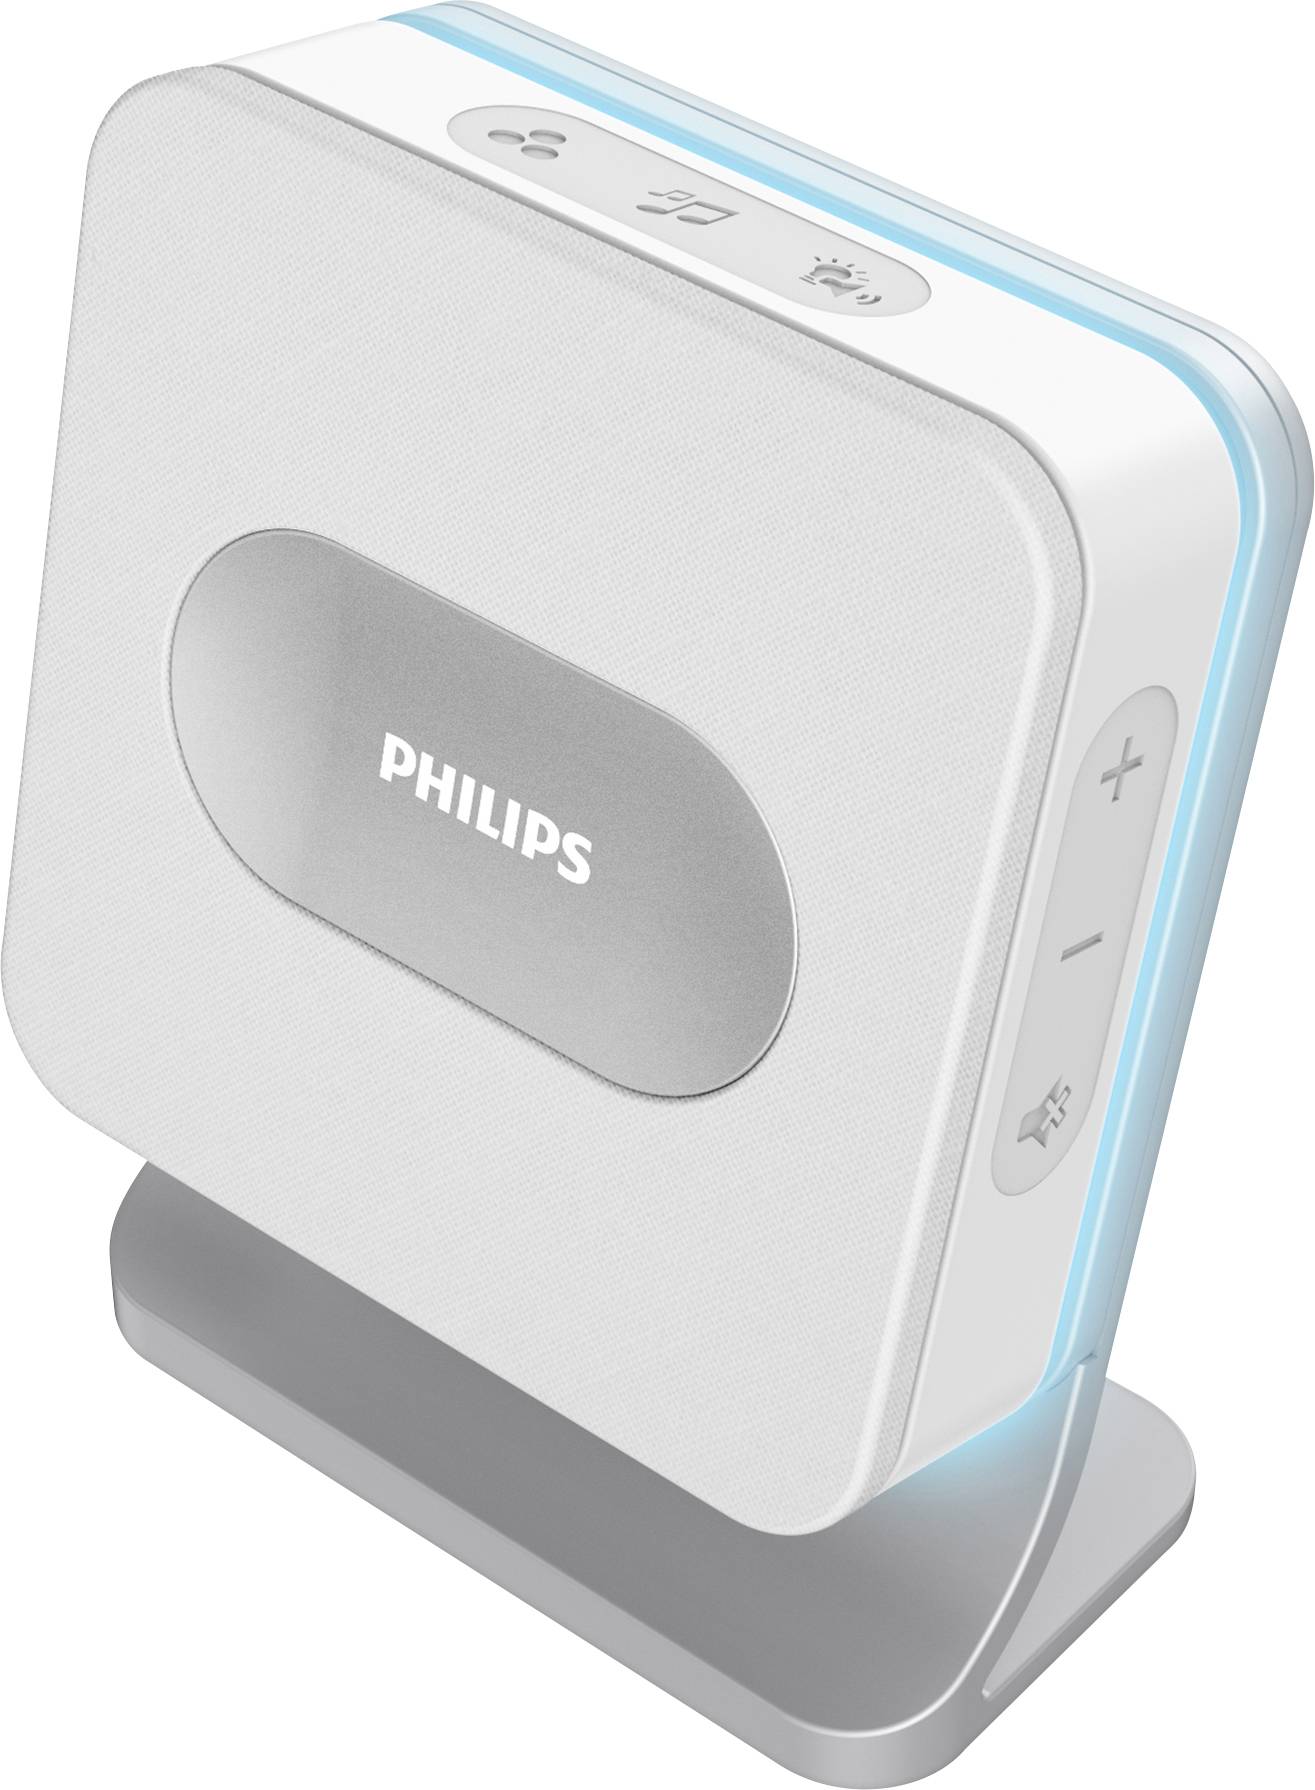 Philips 531014 set voor Draadloze deurbel Verlicht | Conrad.nl